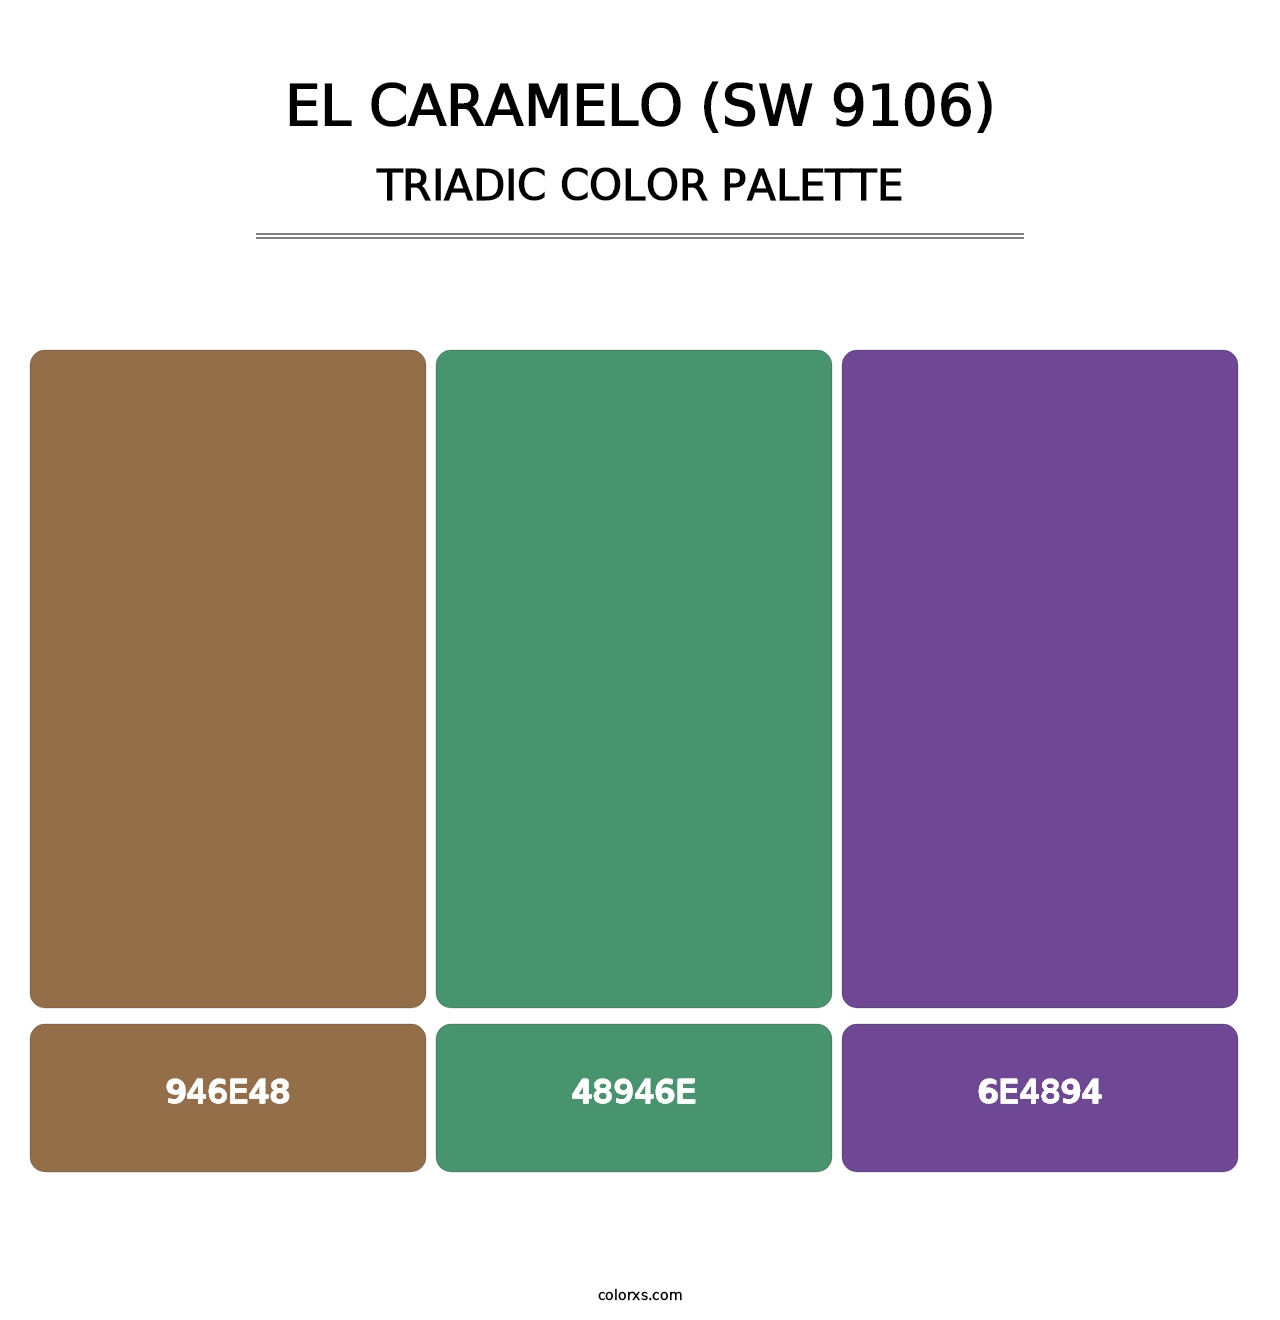 El Caramelo (SW 9106) - Triadic Color Palette